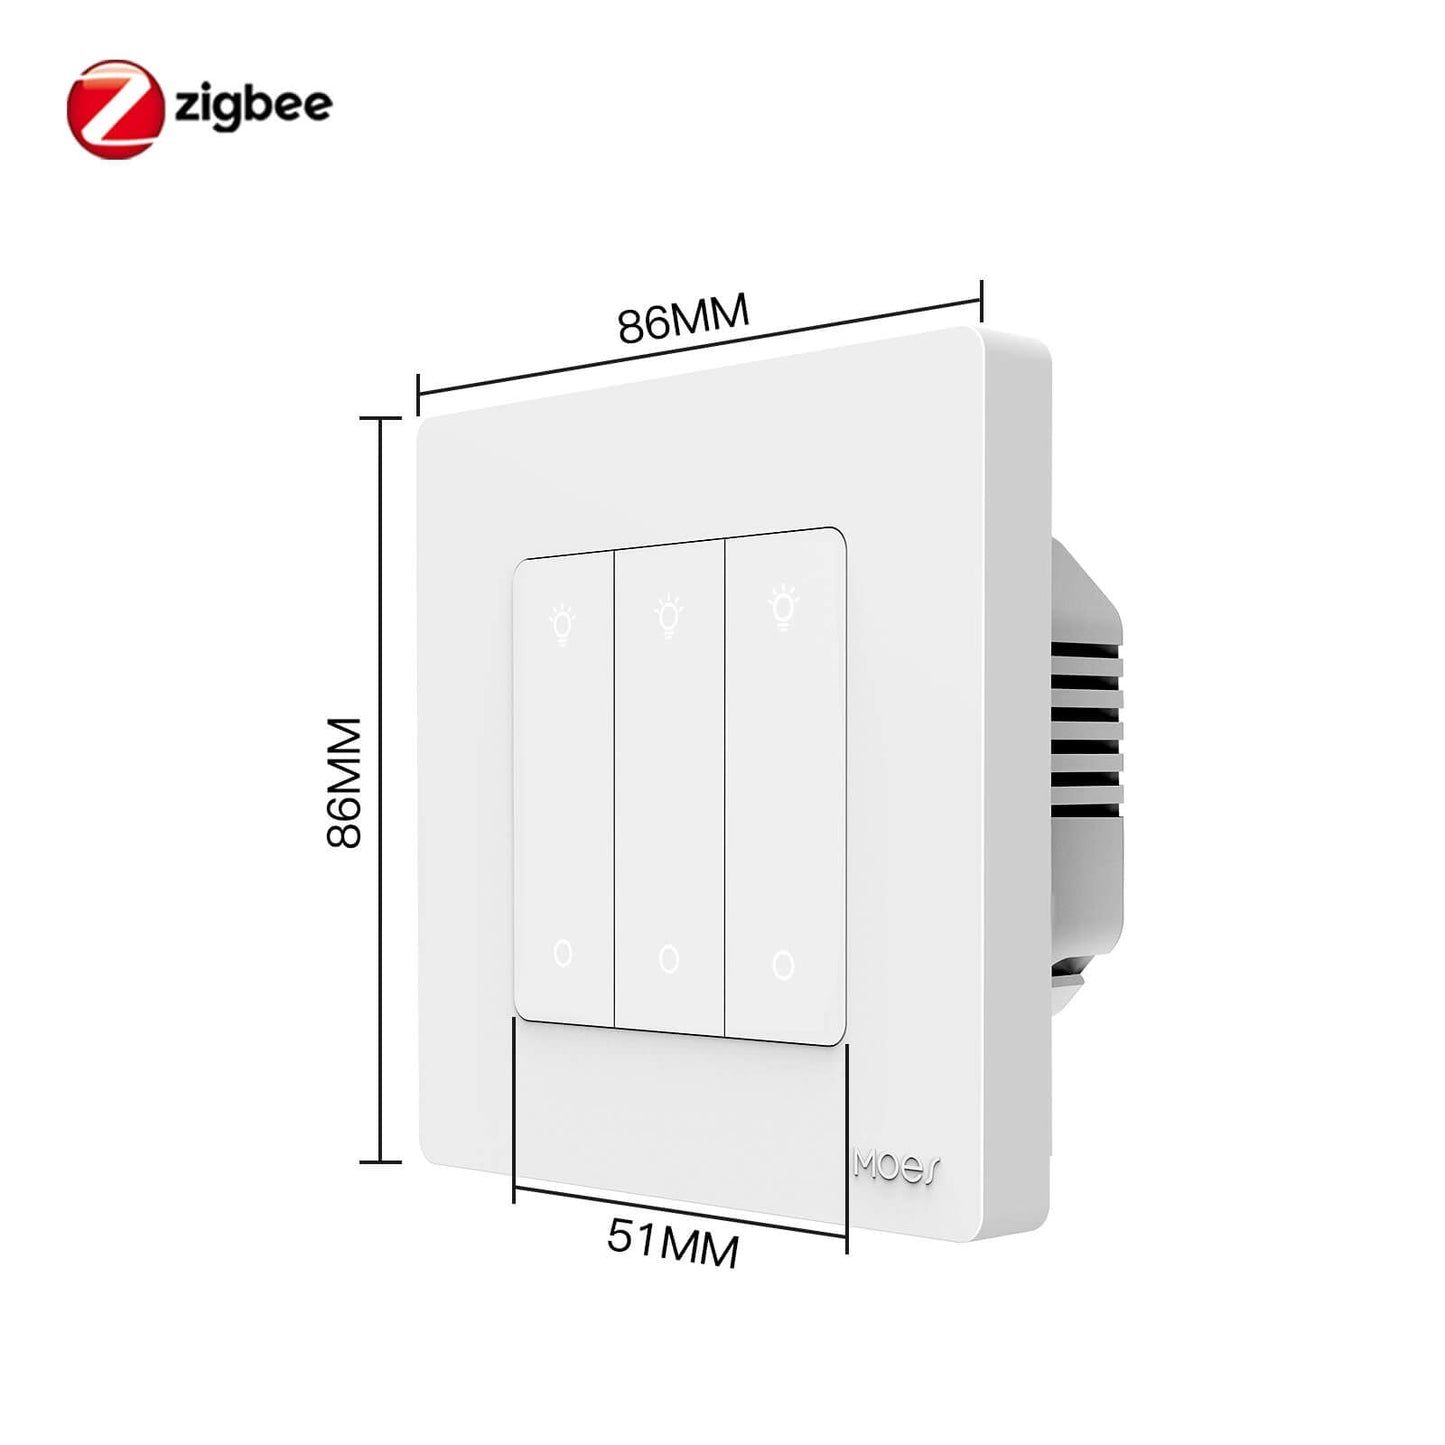 Smart ZigBee Dimmer Switch size - MOES